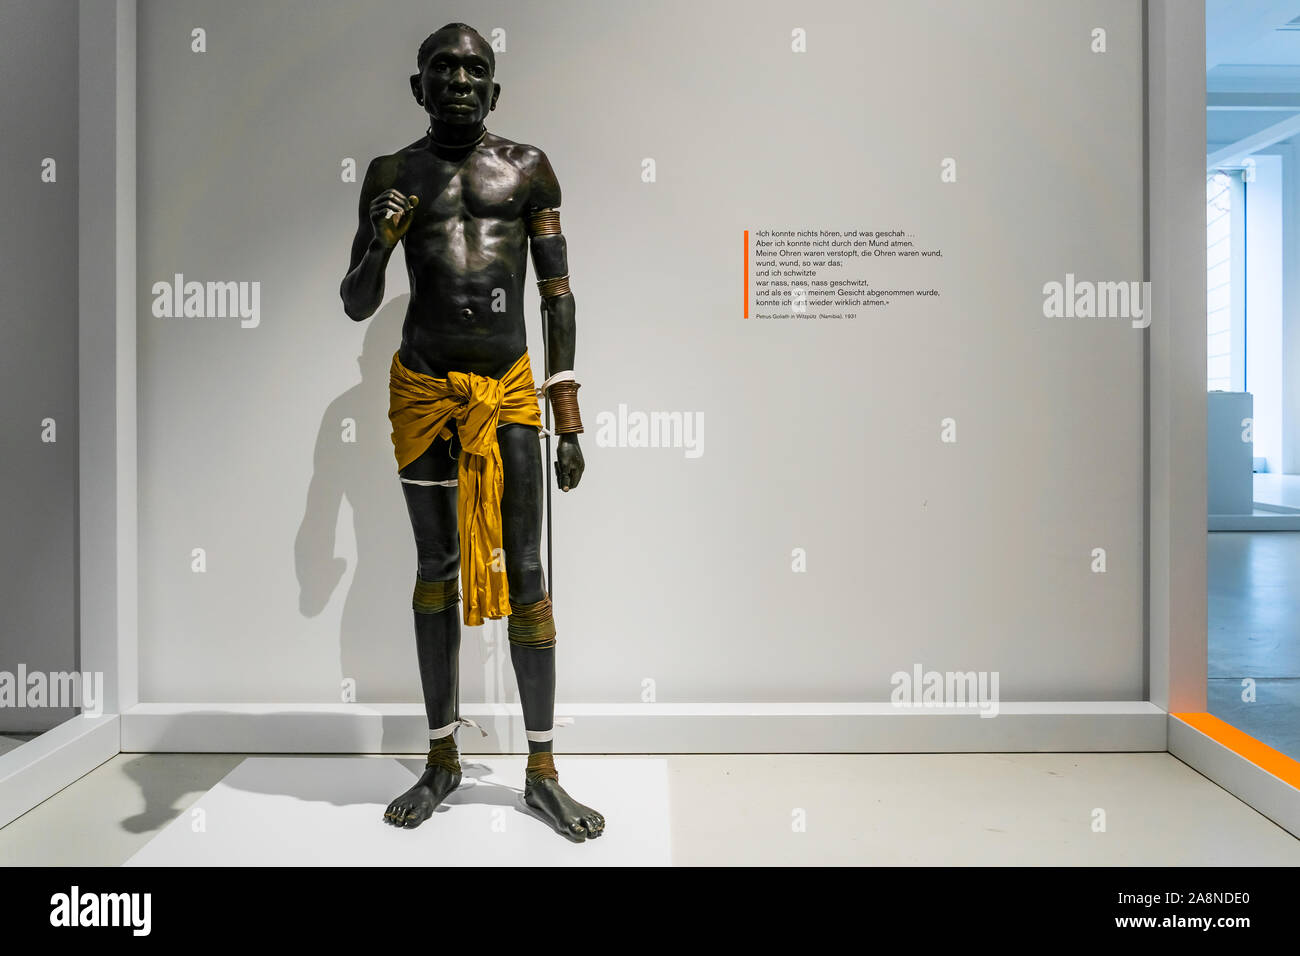 La figure de modèle d'un Wakamba, peuple africain du Kenya, exposée au Musée des Cultures, Bâle, Suisse. Banque D'Images